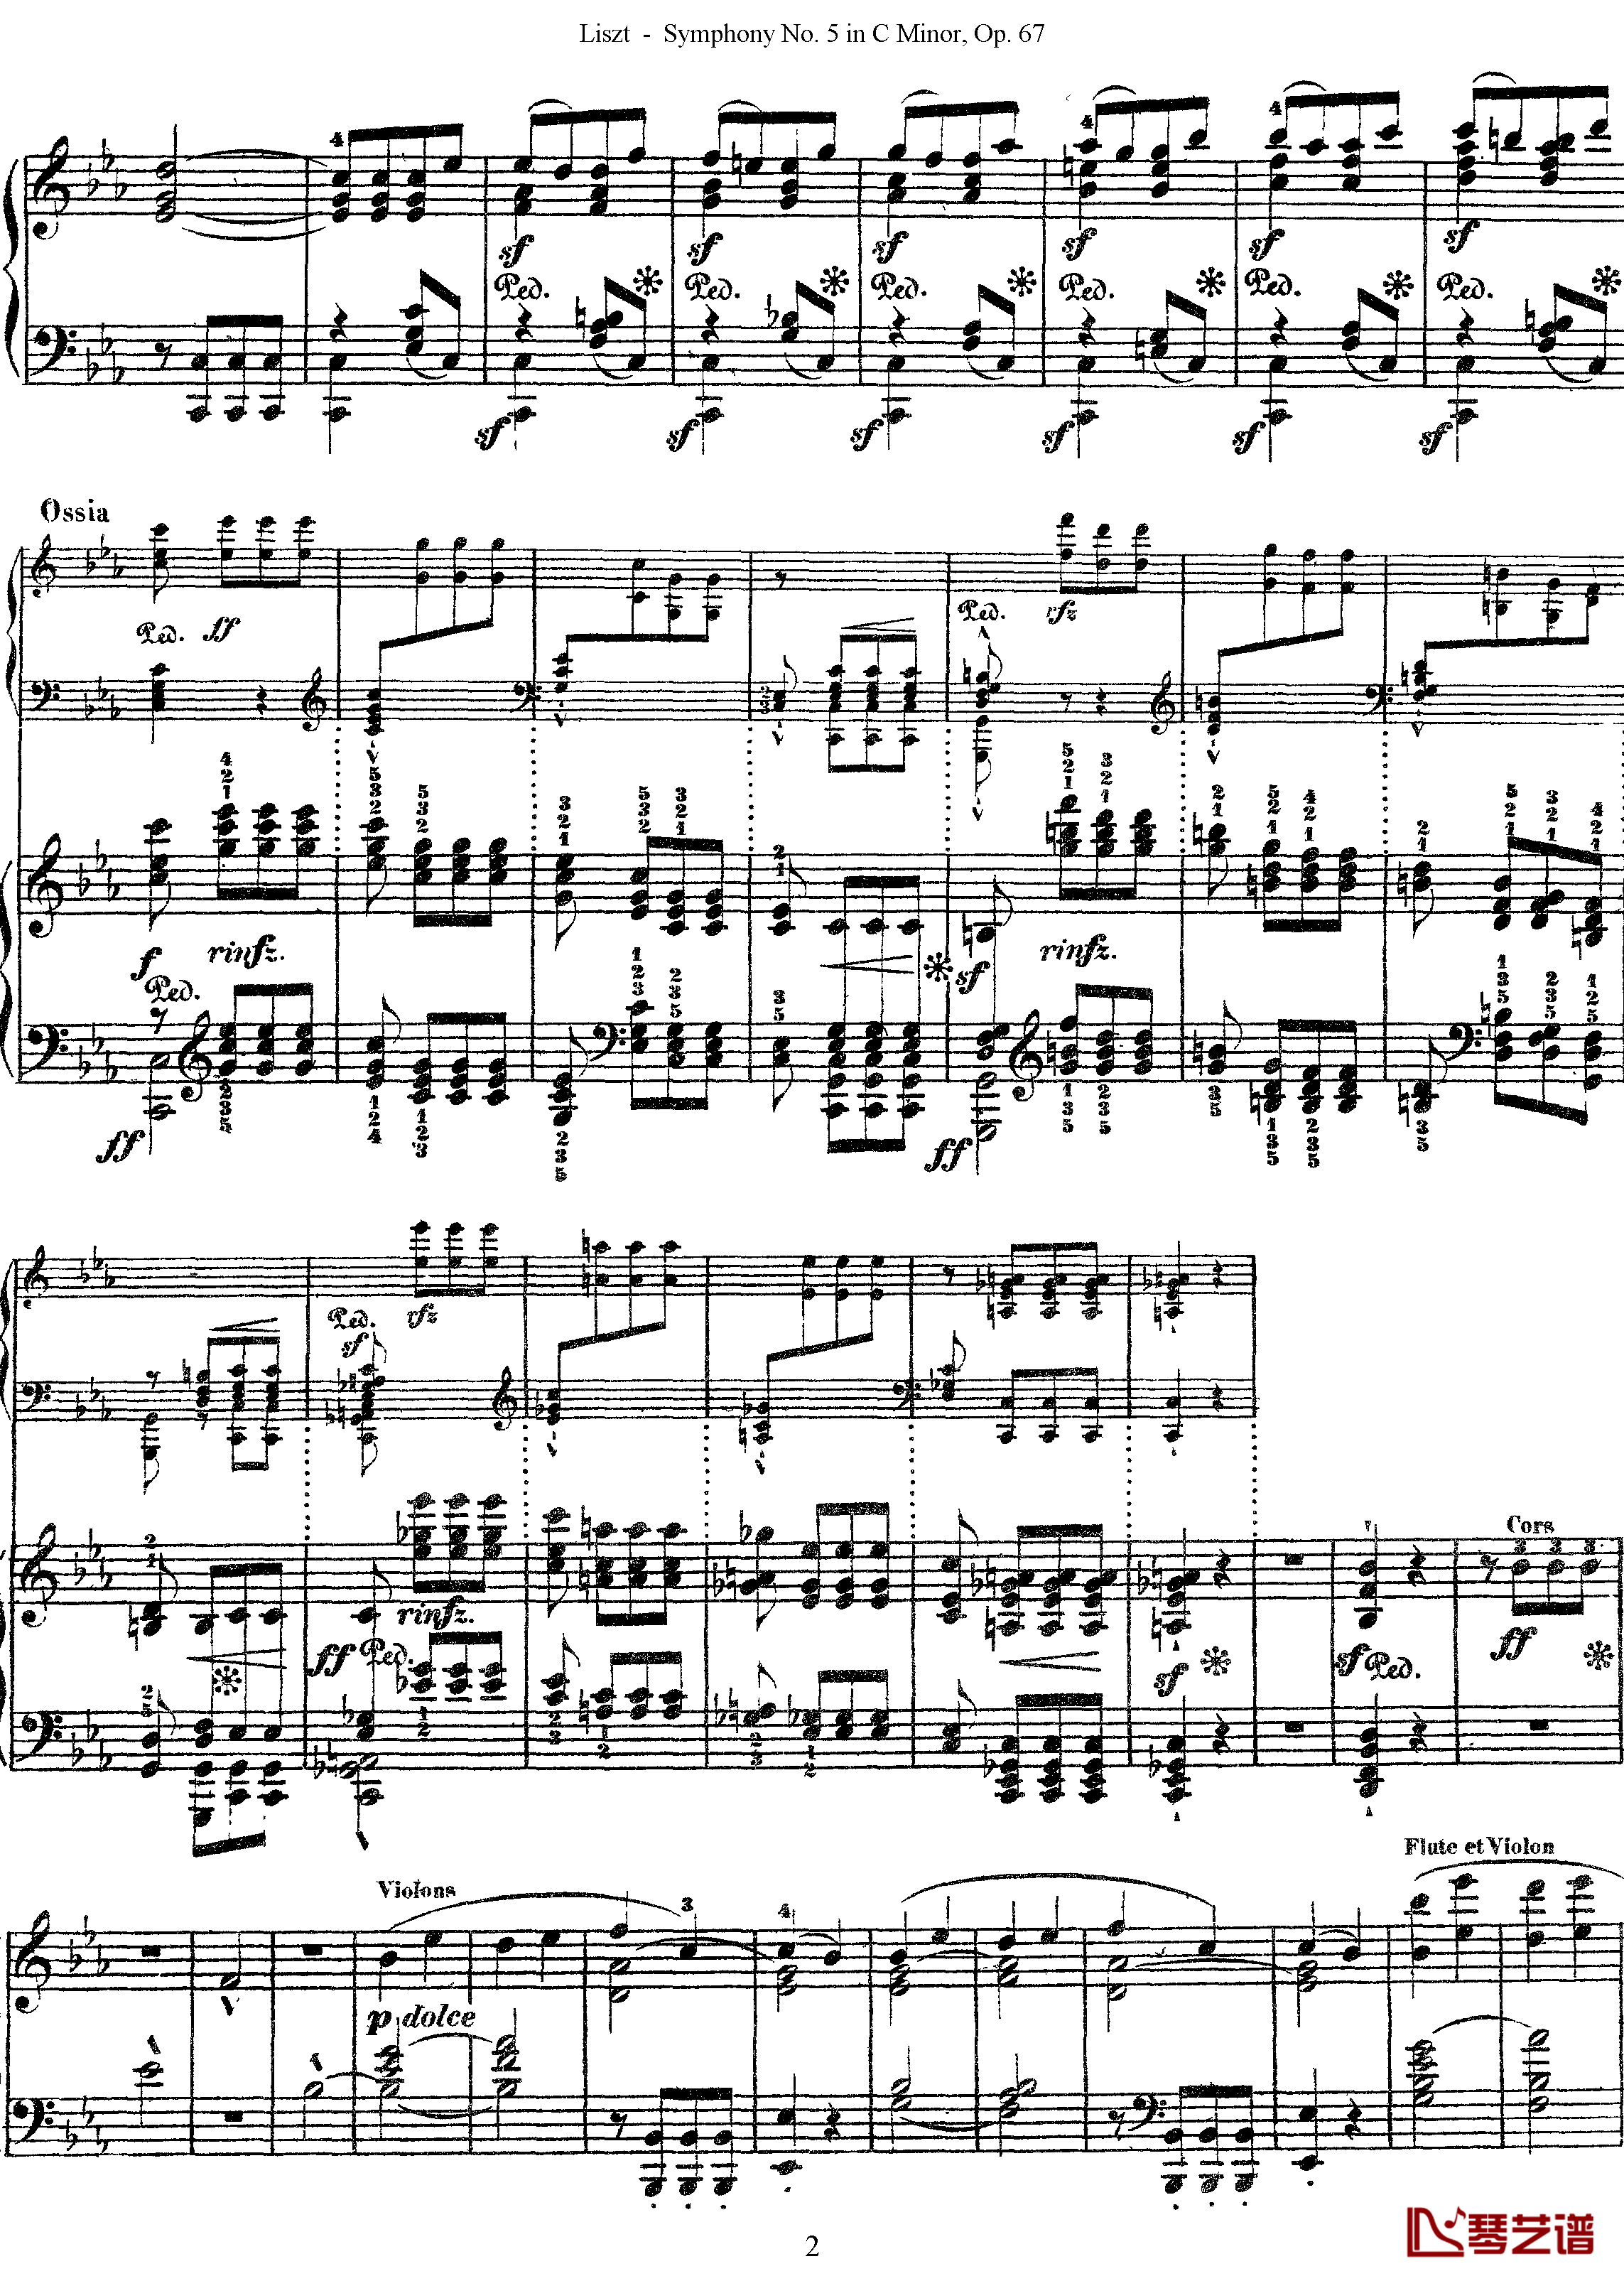 第五交响乐的钢琴曲钢琴谱-李斯特-李斯特改编自贝多芬2